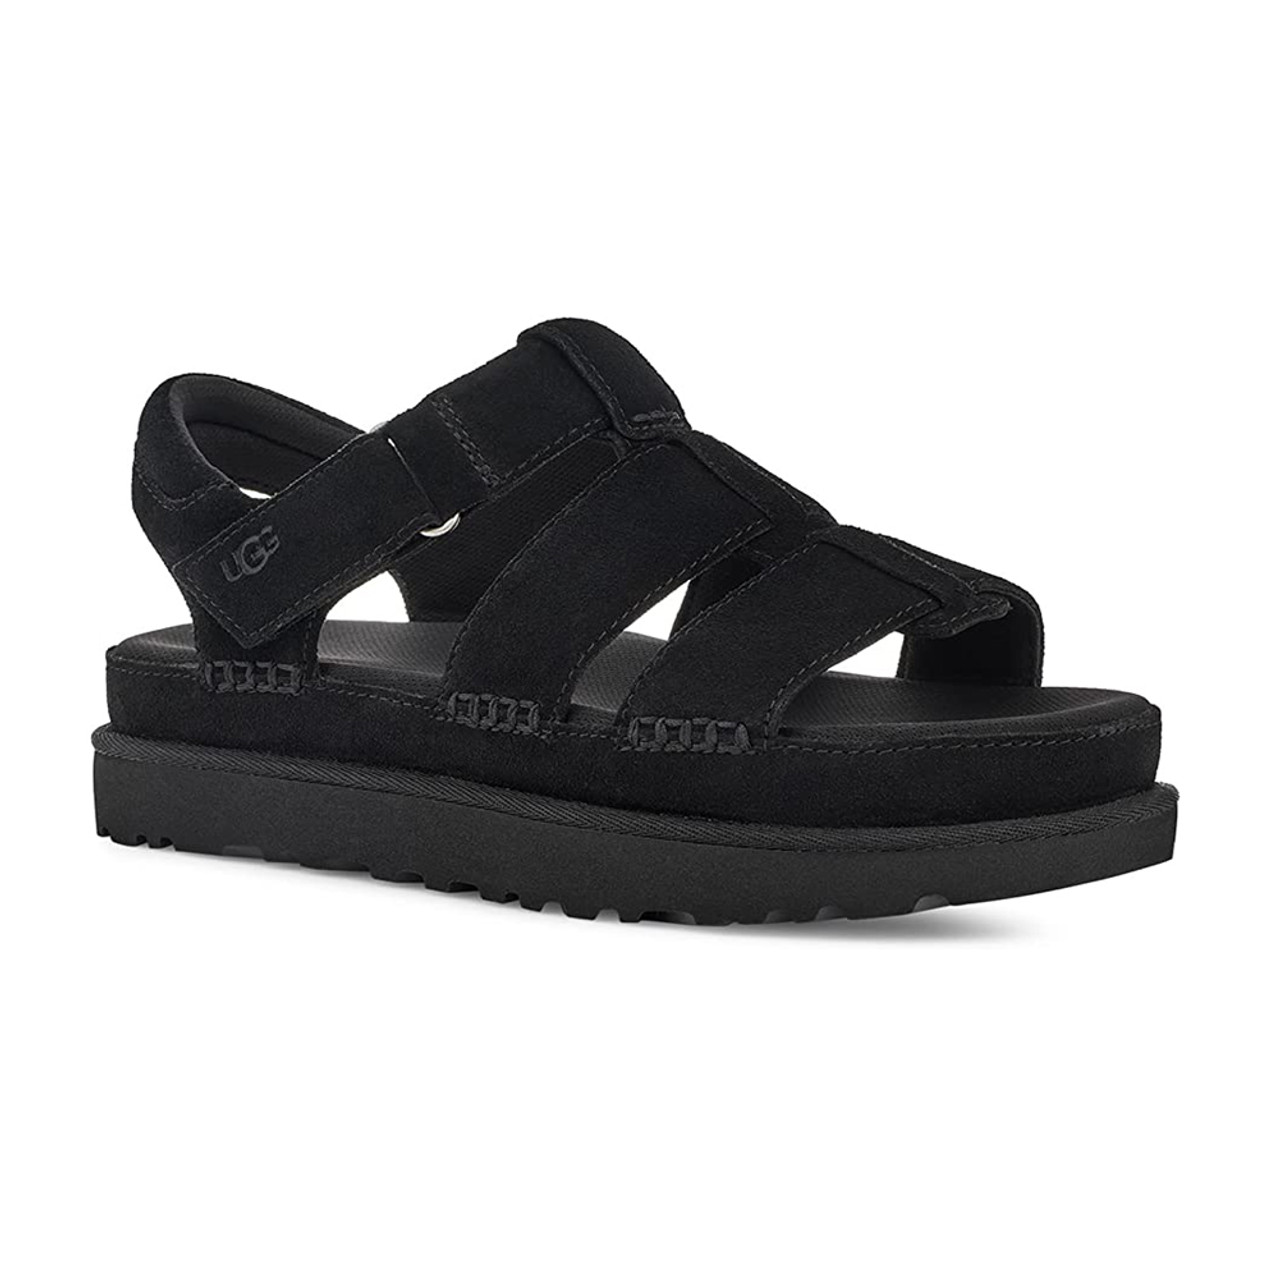 Ladies Comfort Sandals | Shop Online